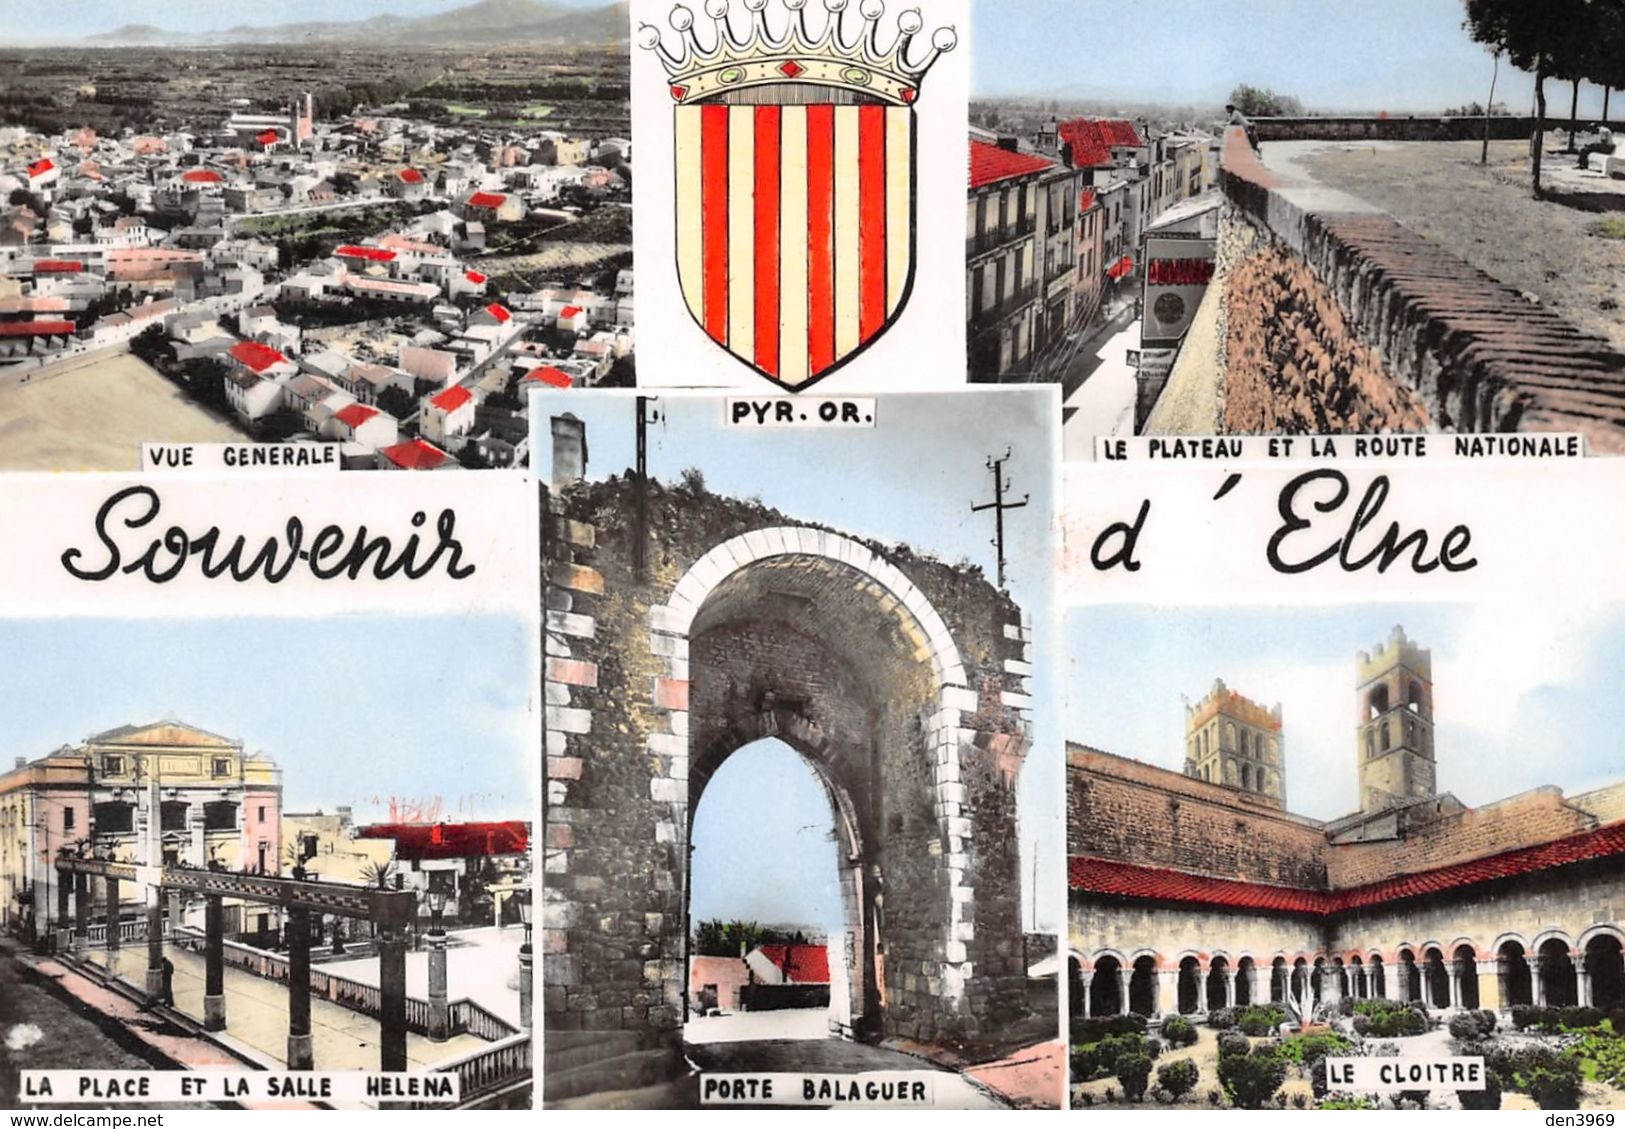 Souvenir D'ELNE - La Place Et La Salle Helena - Porte Balaguer - Le Cloître - Le Plateau Et La Route Nationale - Blason - Elne